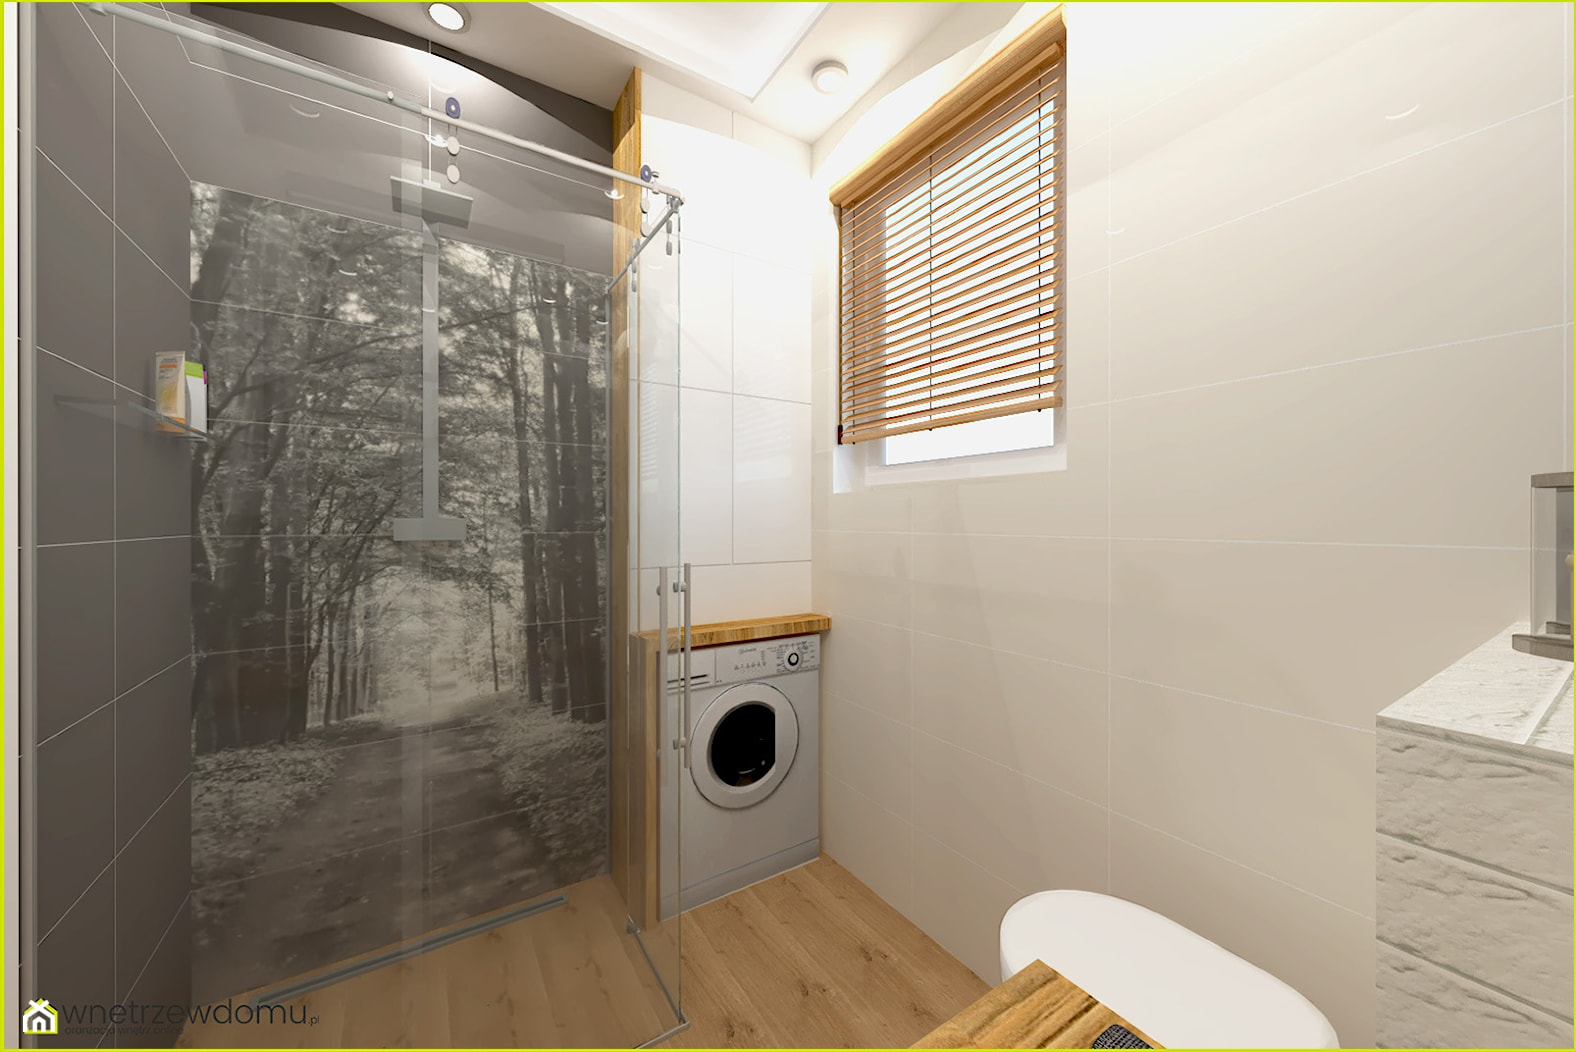 Mała funkcjonalna łazienka z miejscem na pralkę - zdjęcie od wnetrzewdomu - Homebook